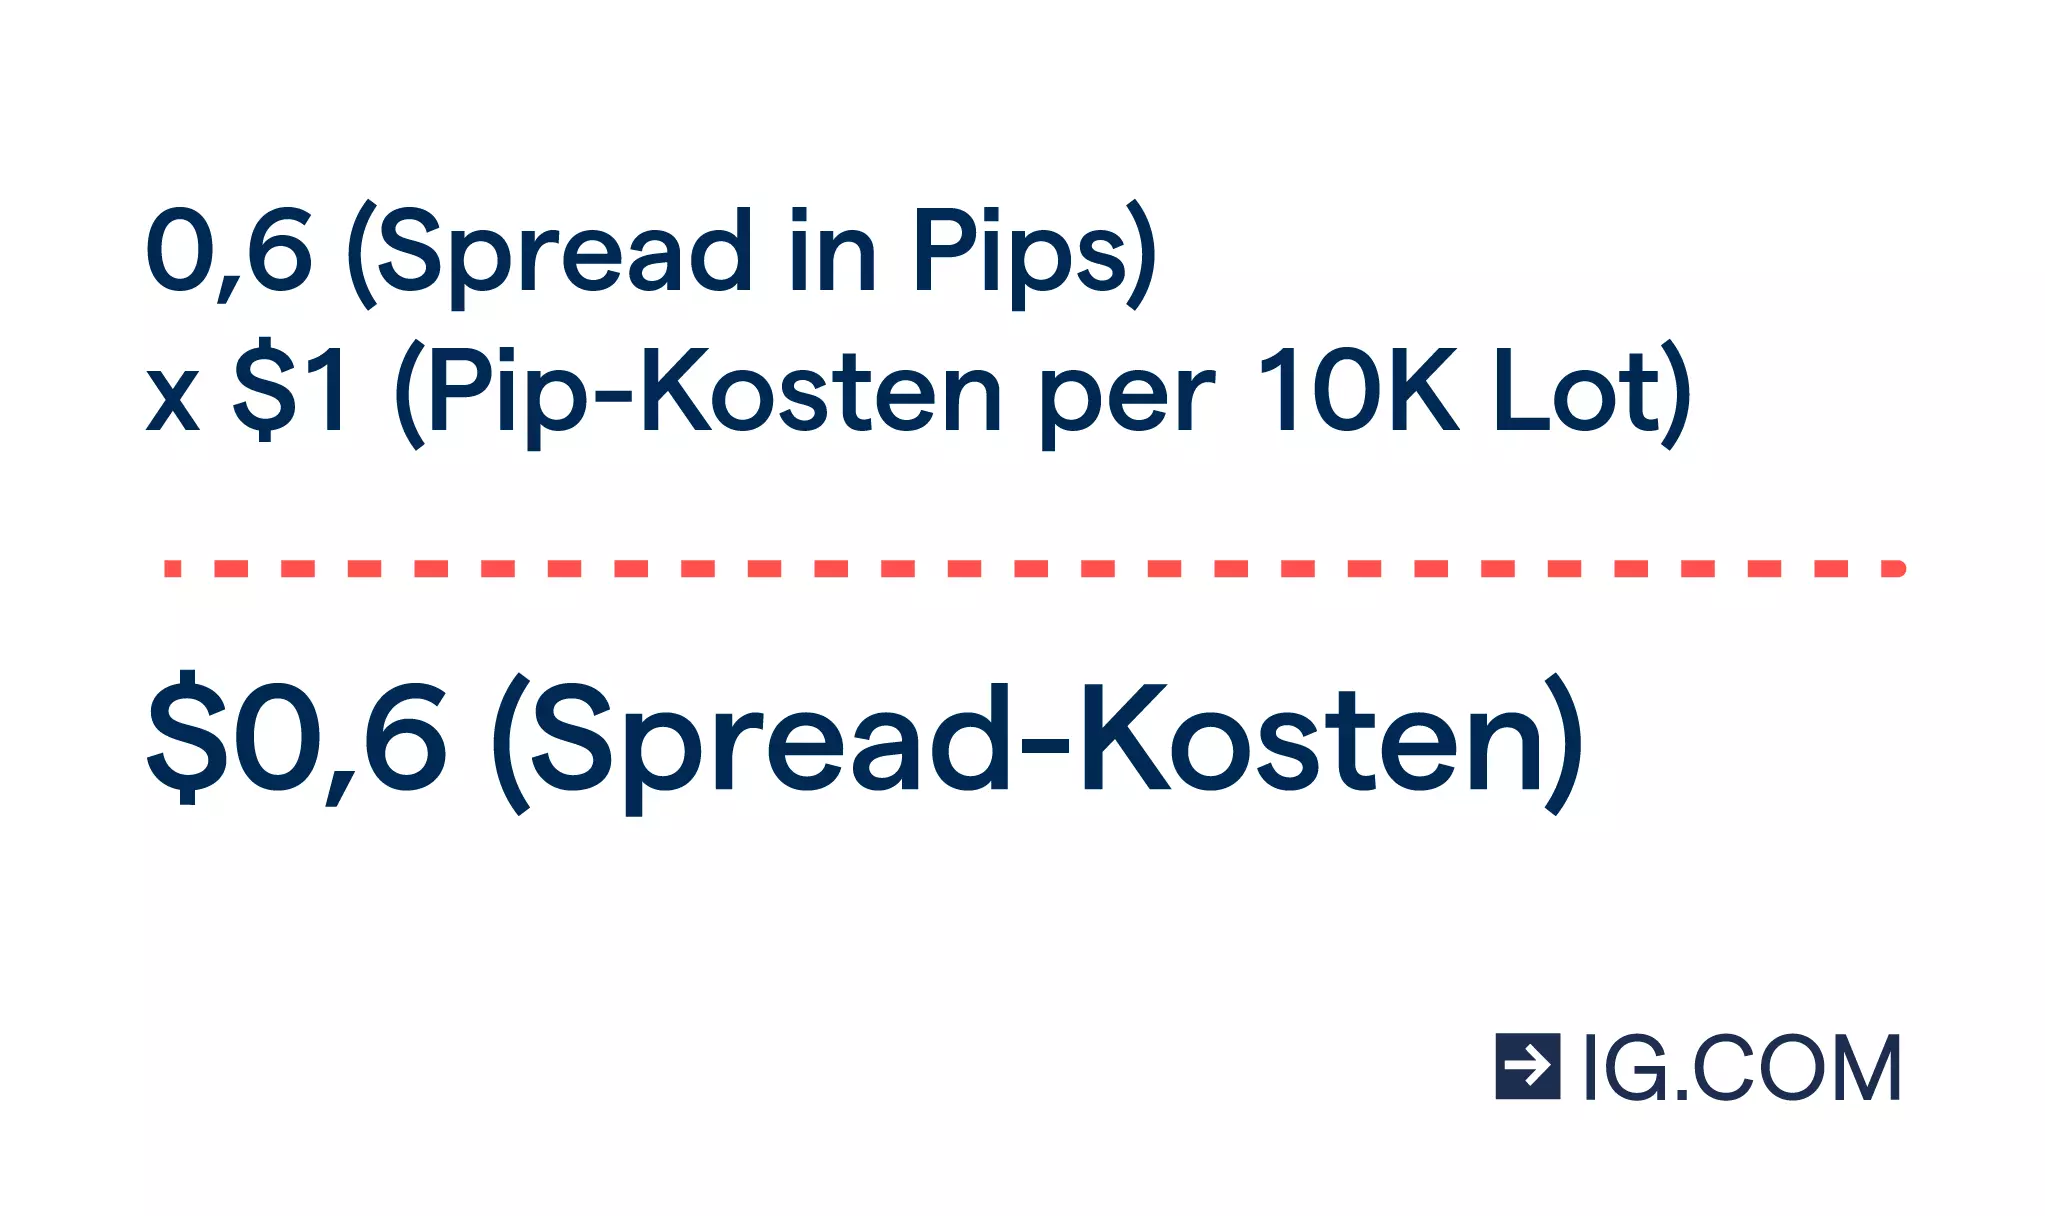 Eine Berechnung mit 0,6 Pips multipliziert mit 1 USD, die Spread-Kosten von 0,6 USD ergibt.